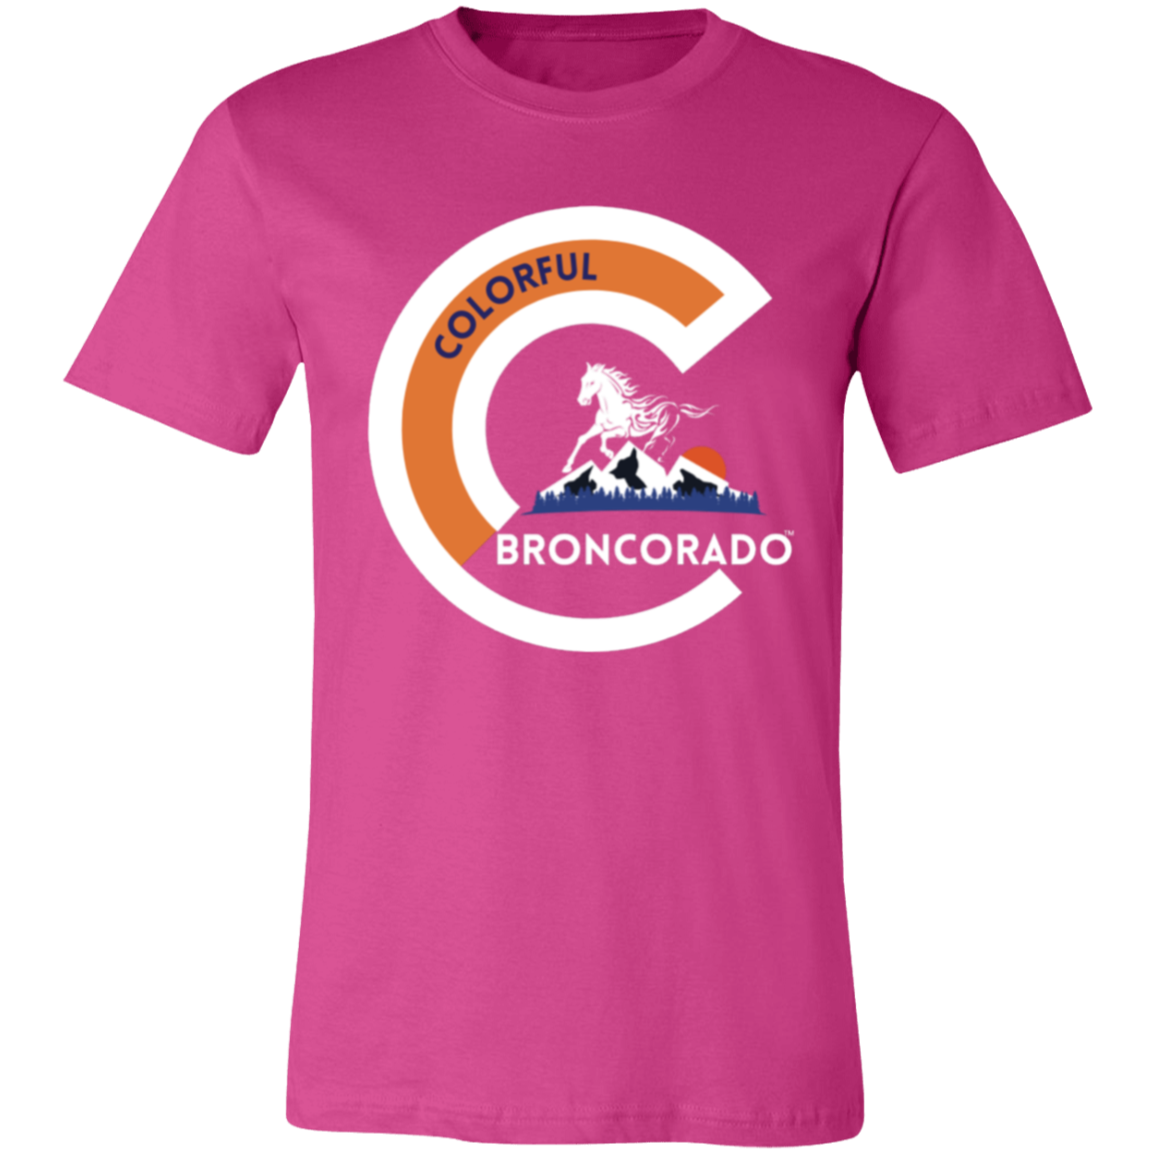 Unisex Colorful Broncorado™ Denver Bronco Fan Gear Jersey Short-Sleeve T-Shirt XS-4XL / 6 colors